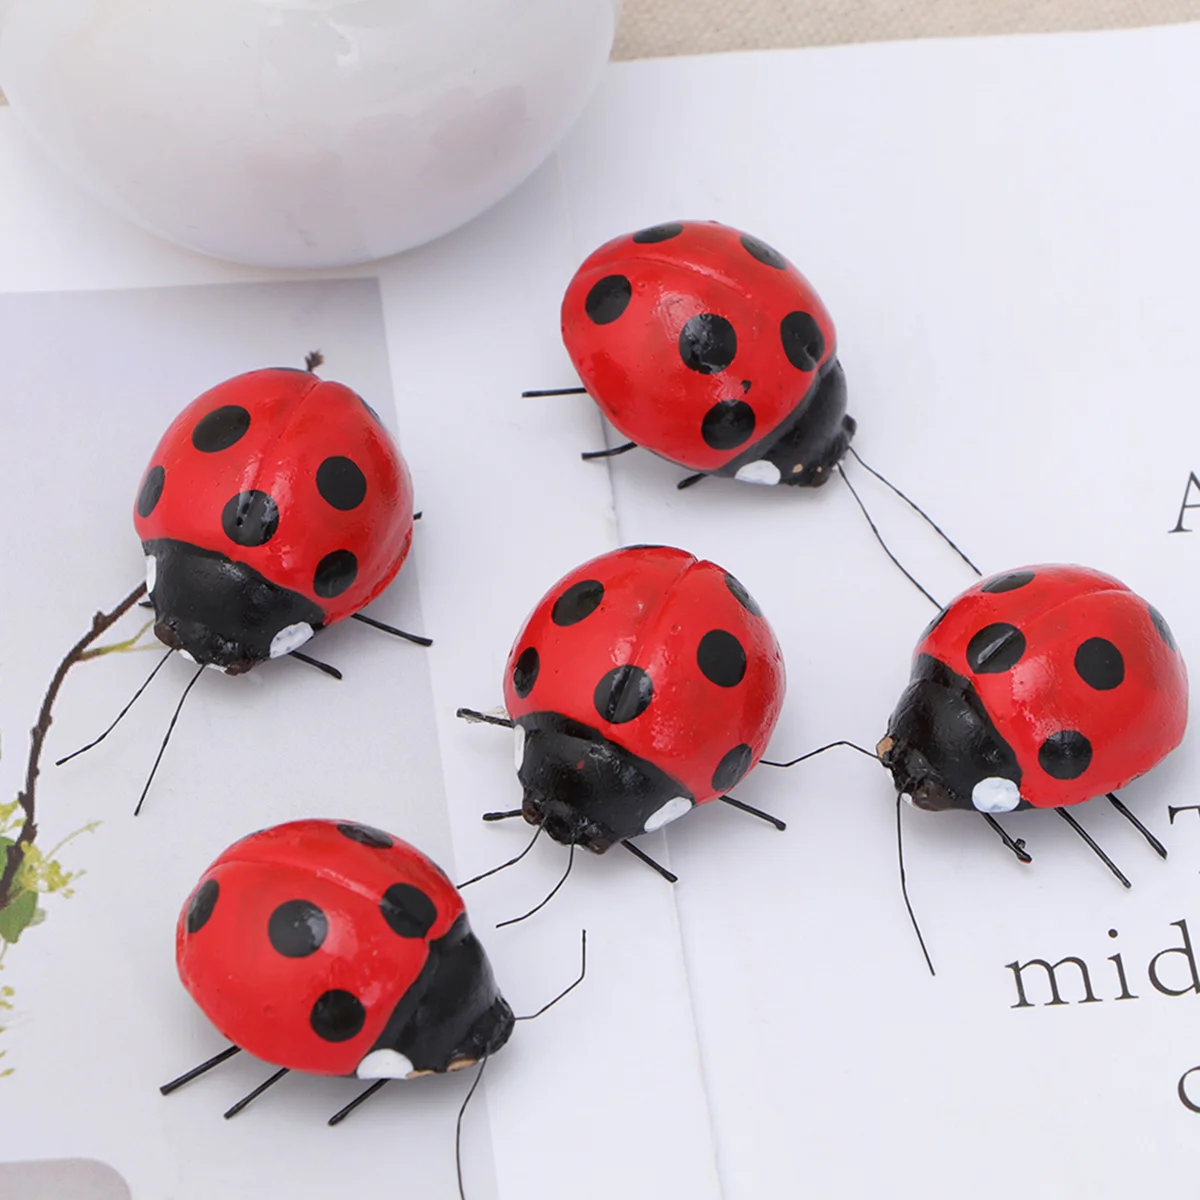 

5pcs Ladybug Fridge Magnets Refrigerator Magnets Miniature Ladybug Figurines Ladybug Embellishments for Home